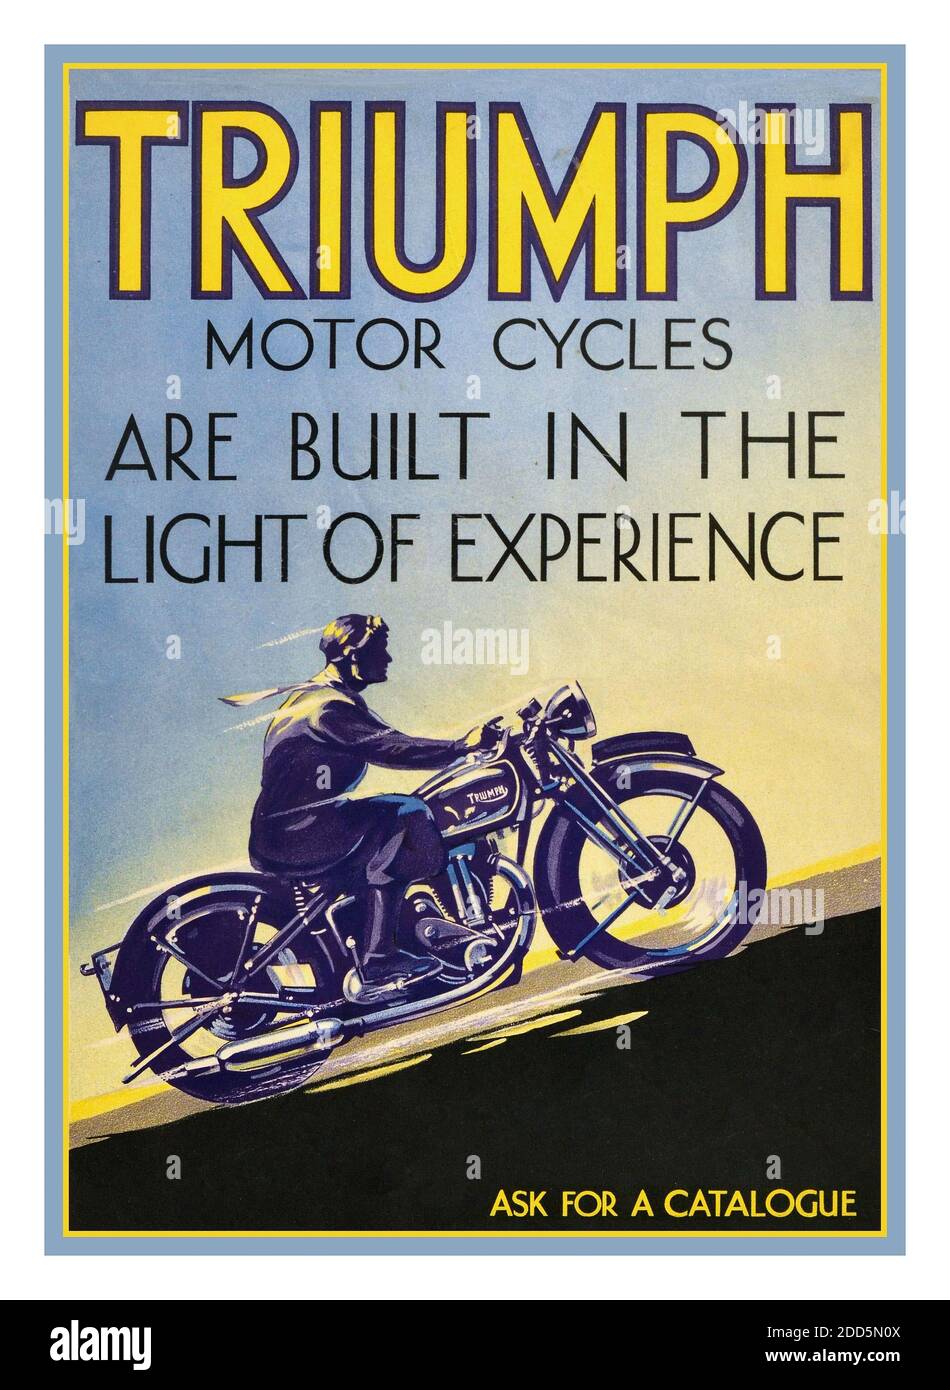 VINTAGE TRIUMPH MOTORCYCLES Poster Advertising vintage années 1930 British UK poster publicitaire publié par le fabricant britannique de cycles motorisés Triumph Engineering - “Triumph Motorcycles sont construits dans la lumière de l'expérience”. Design art déco d'un motocycliste qui monte en vitesse sur une colline. Triumph Engineering Co Ltd était une société britannique de fabrication de motos, basée à Coventry, puis à Meriden. Une nouvelle société, Triumph Motorcycles Ltd, basée à Hinckley, a obtenu les droits de nom après la fin de l'entreprise dans les années 1980 et est l'un des principaux fabricants de motos au monde. Royaume-Uni, années 1930 Banque D'Images